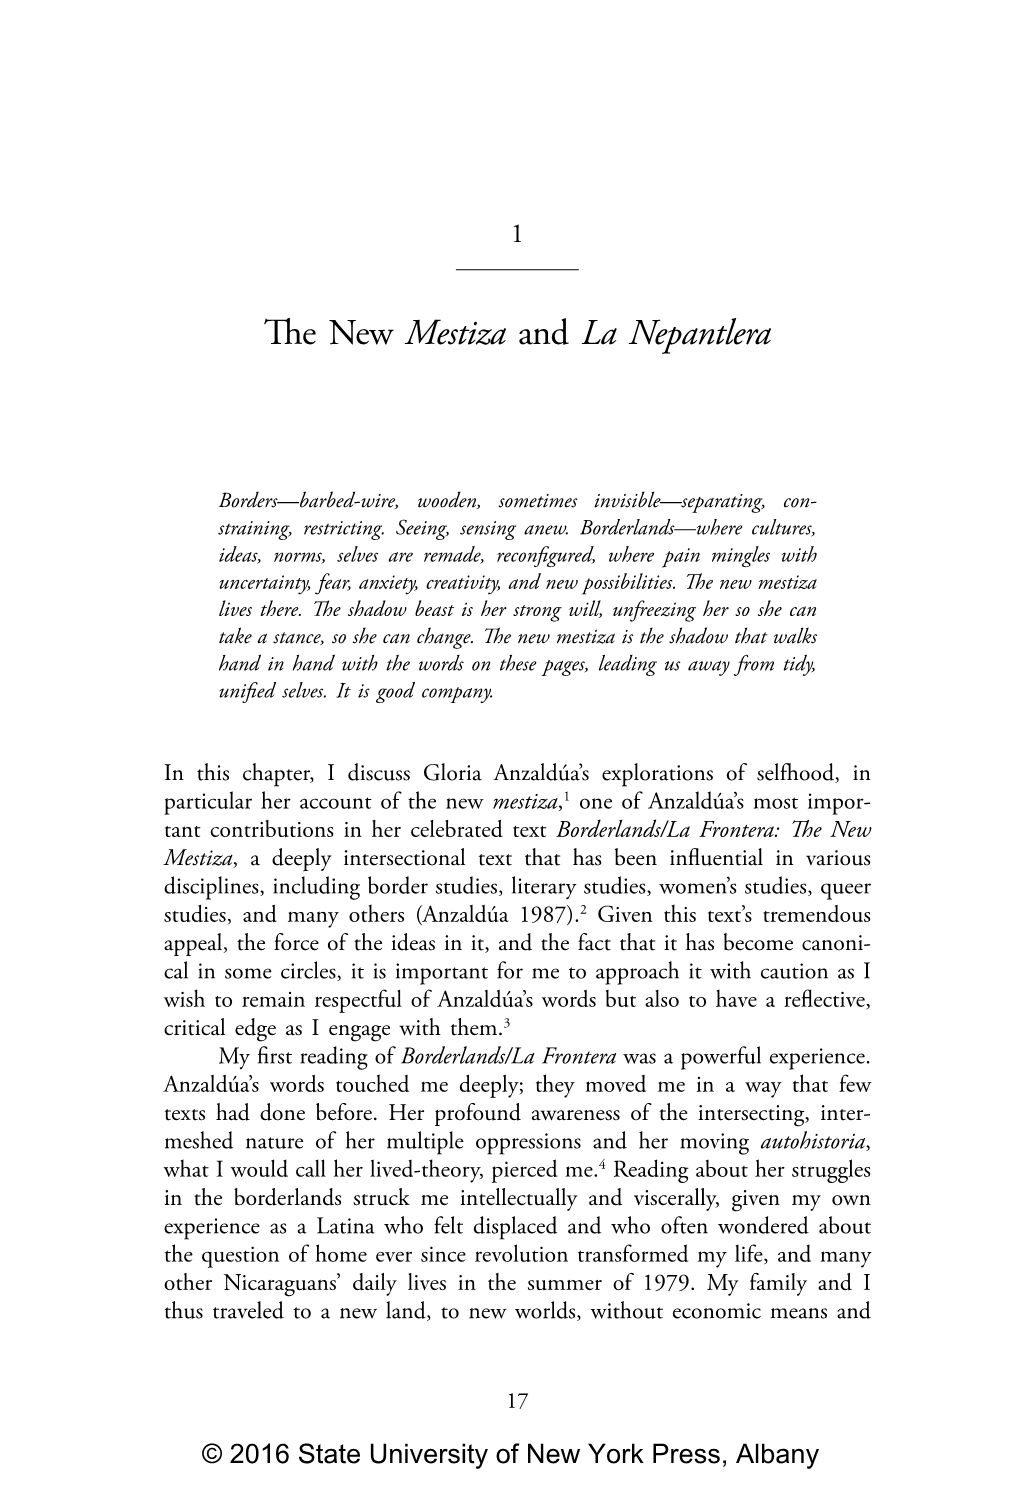 The New Mestiza and La Nepantlera